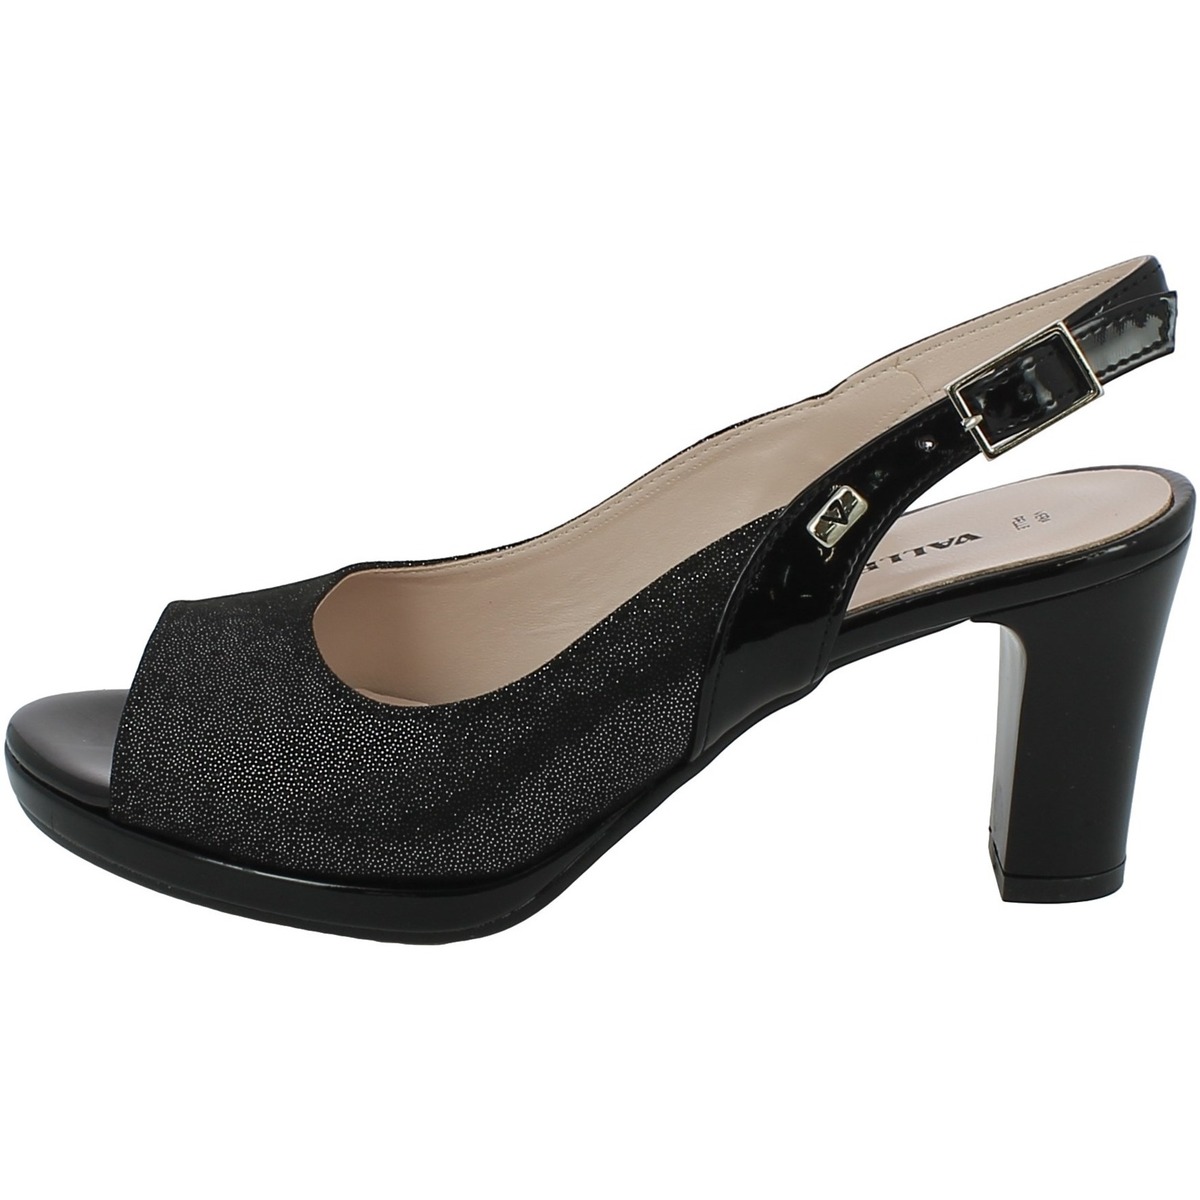 Chaussures Femme Allée Du Foulard 28341.01 Noir